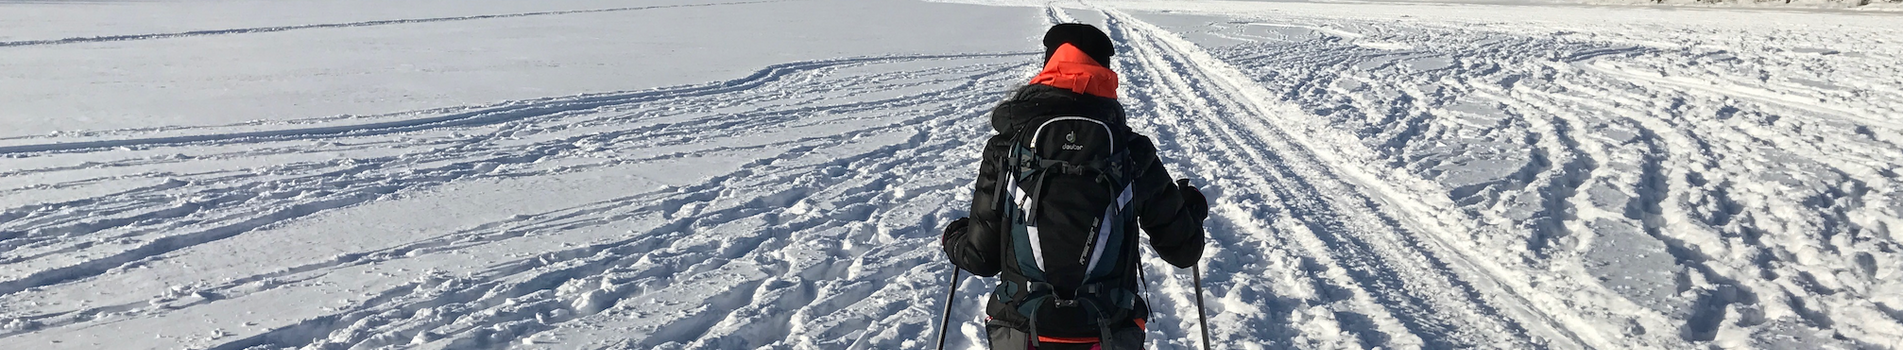 Groepsreis Lapland winter 18-32 jaar